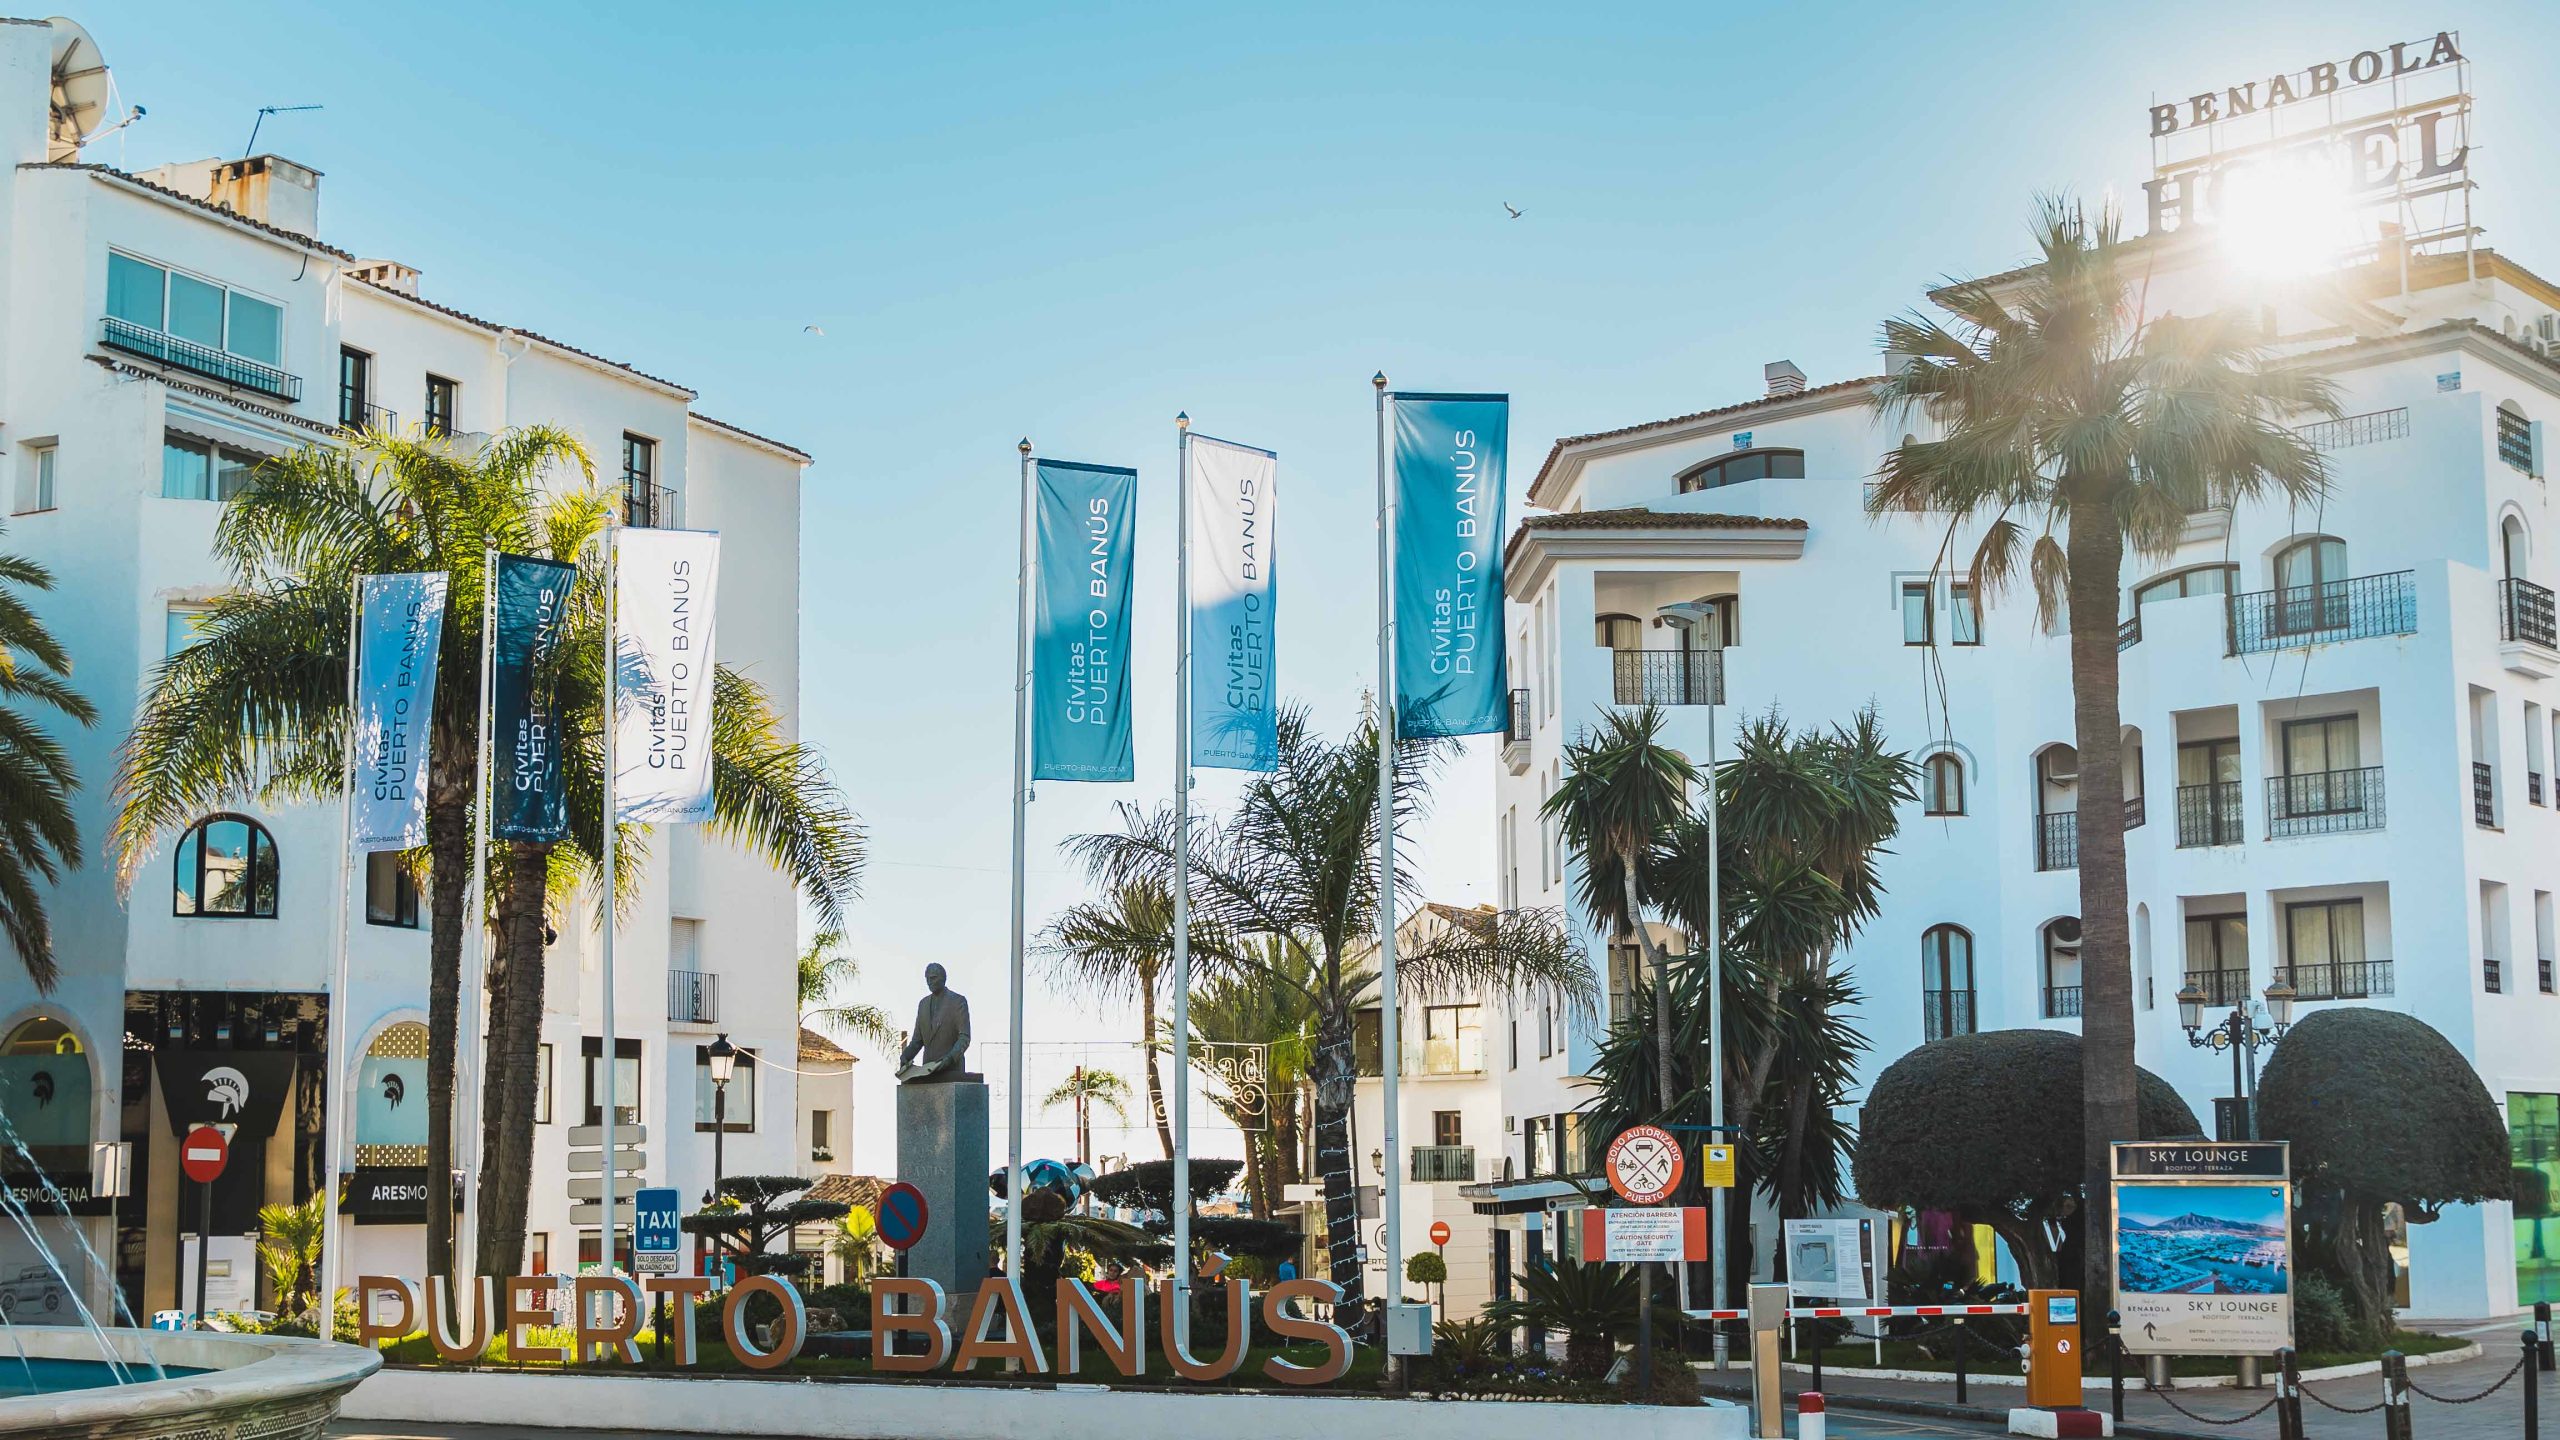 Best restaurants in Puerto Banus - Marbella Property Sales and Rentals